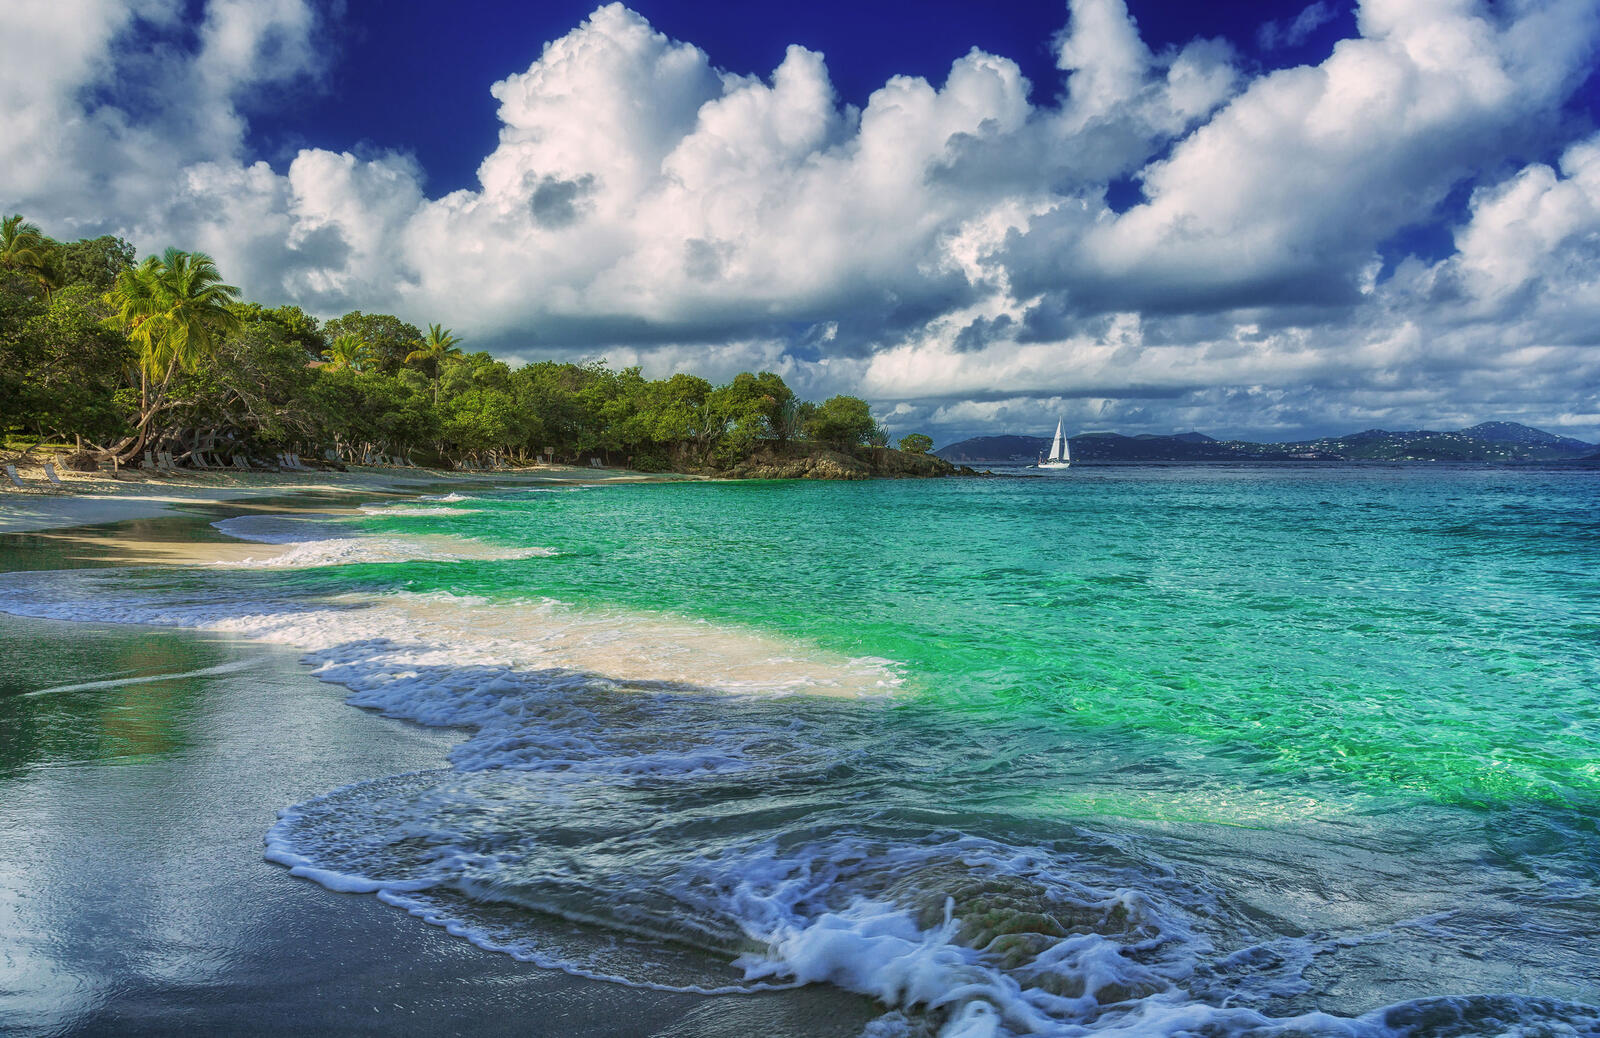 Бесплатное фото Картинки красивые святого иоанна, пляж тертл-бэй бесплатно